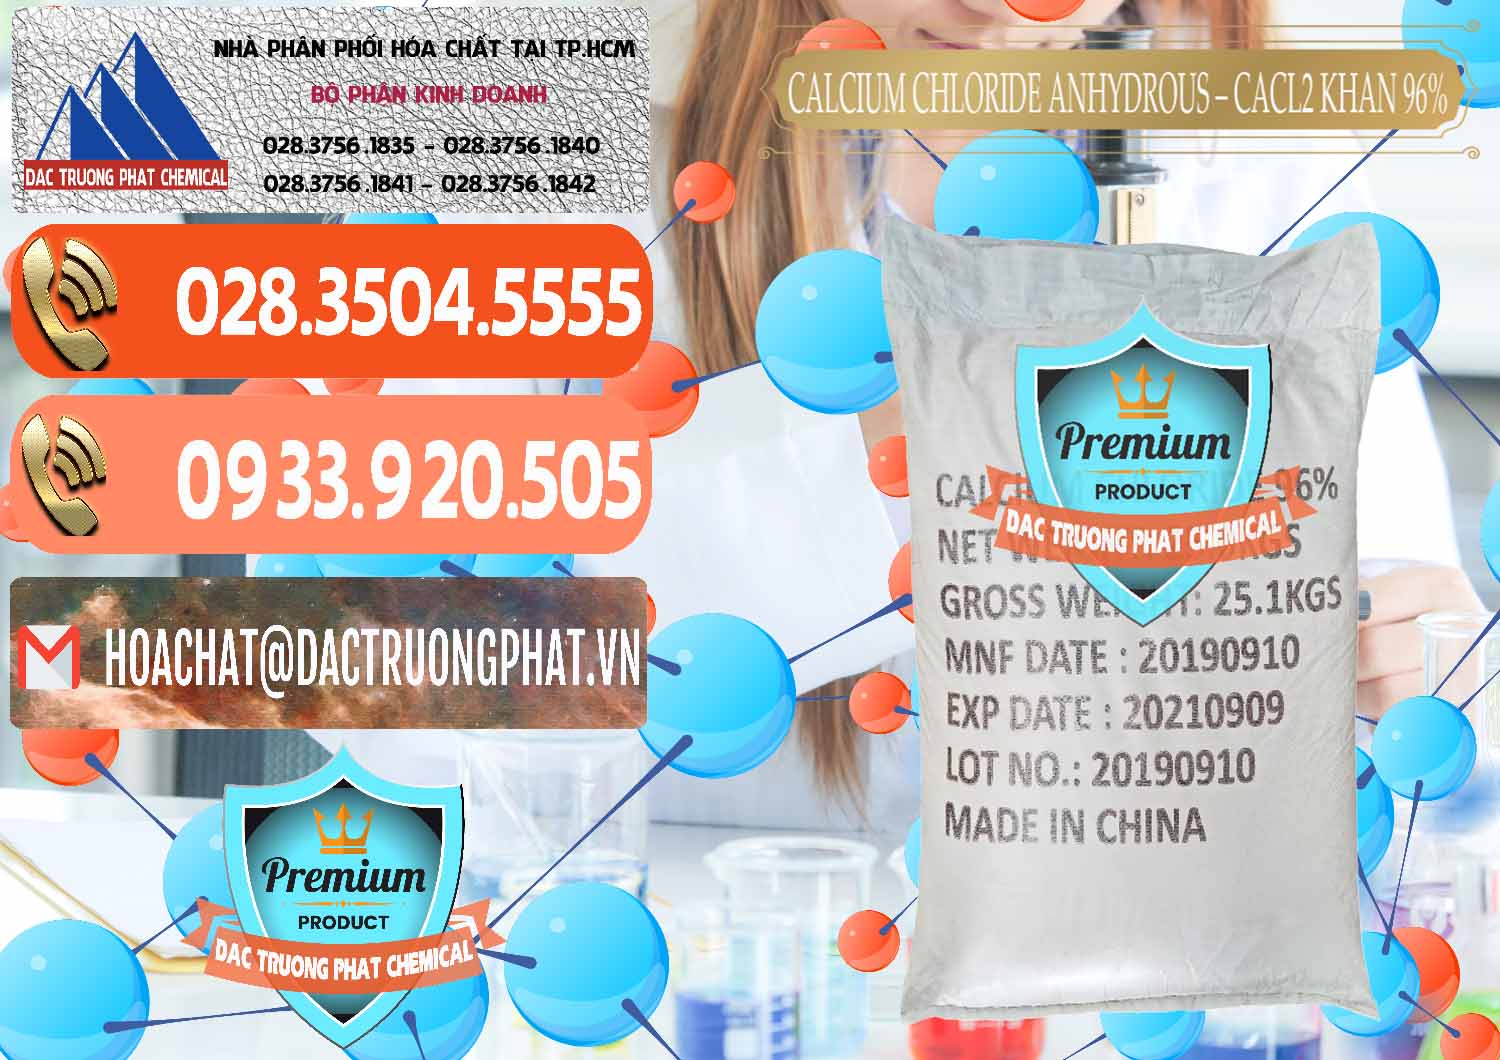 Đơn vị bán và cung ứng CaCl2 – Canxi Clorua Anhydrous Khan 96% Trung Quốc China - 0043 - Cty cung cấp và bán hóa chất tại TP.HCM - hoachatmientay.com